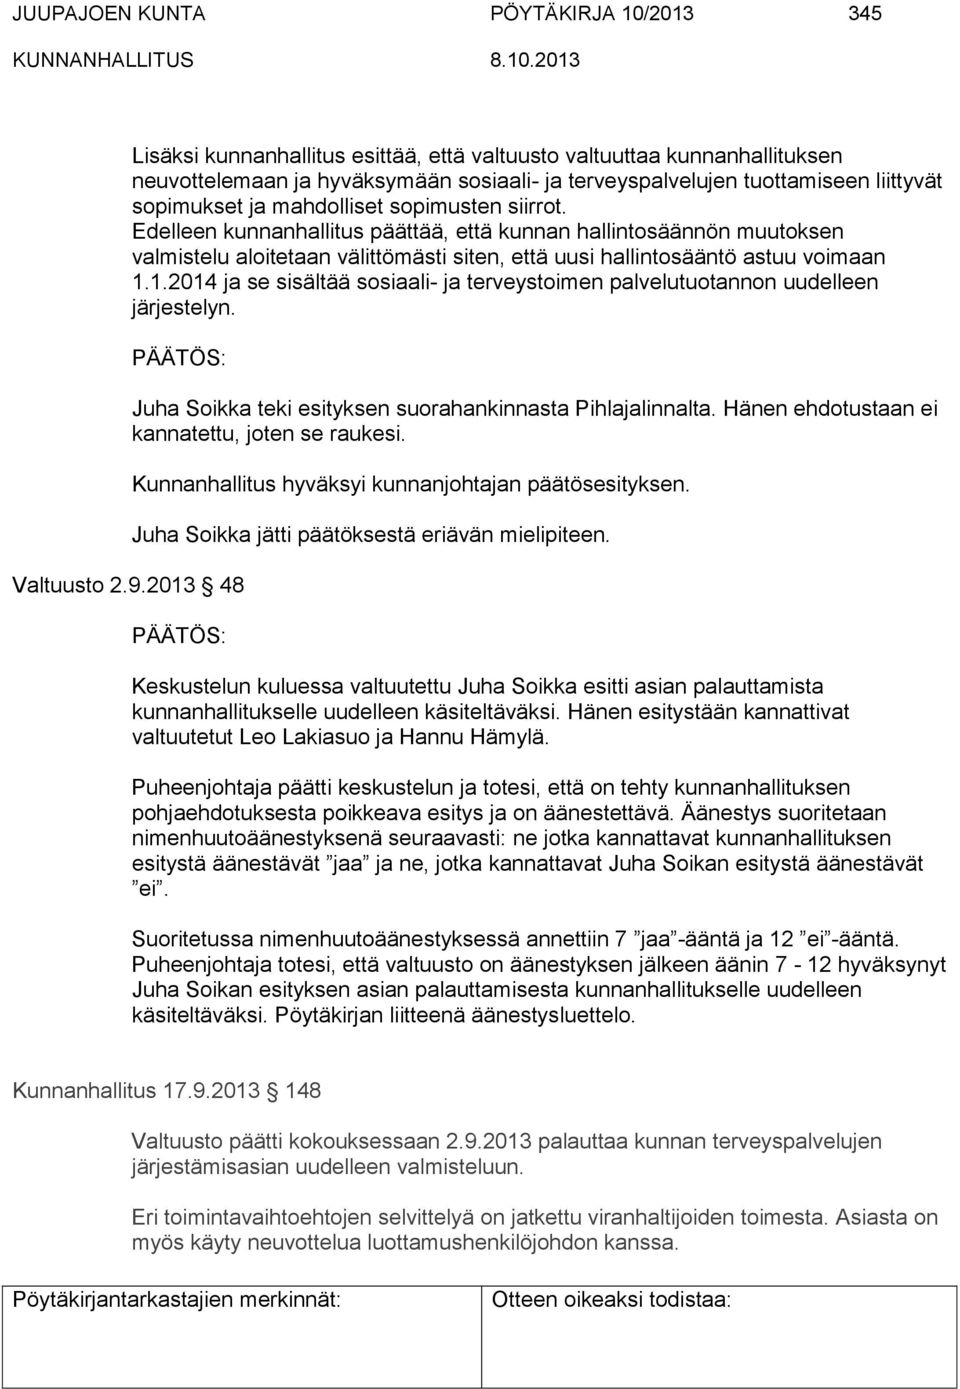 1.2014 ja se sisältää sosiaali- ja terveystoimen palvelutuotannon uudelleen järjestelyn. Juha Soikka teki esityksen suorahankinnasta Pihlajalinnalta. Hänen ehdotustaan ei kannatettu, joten se raukesi.